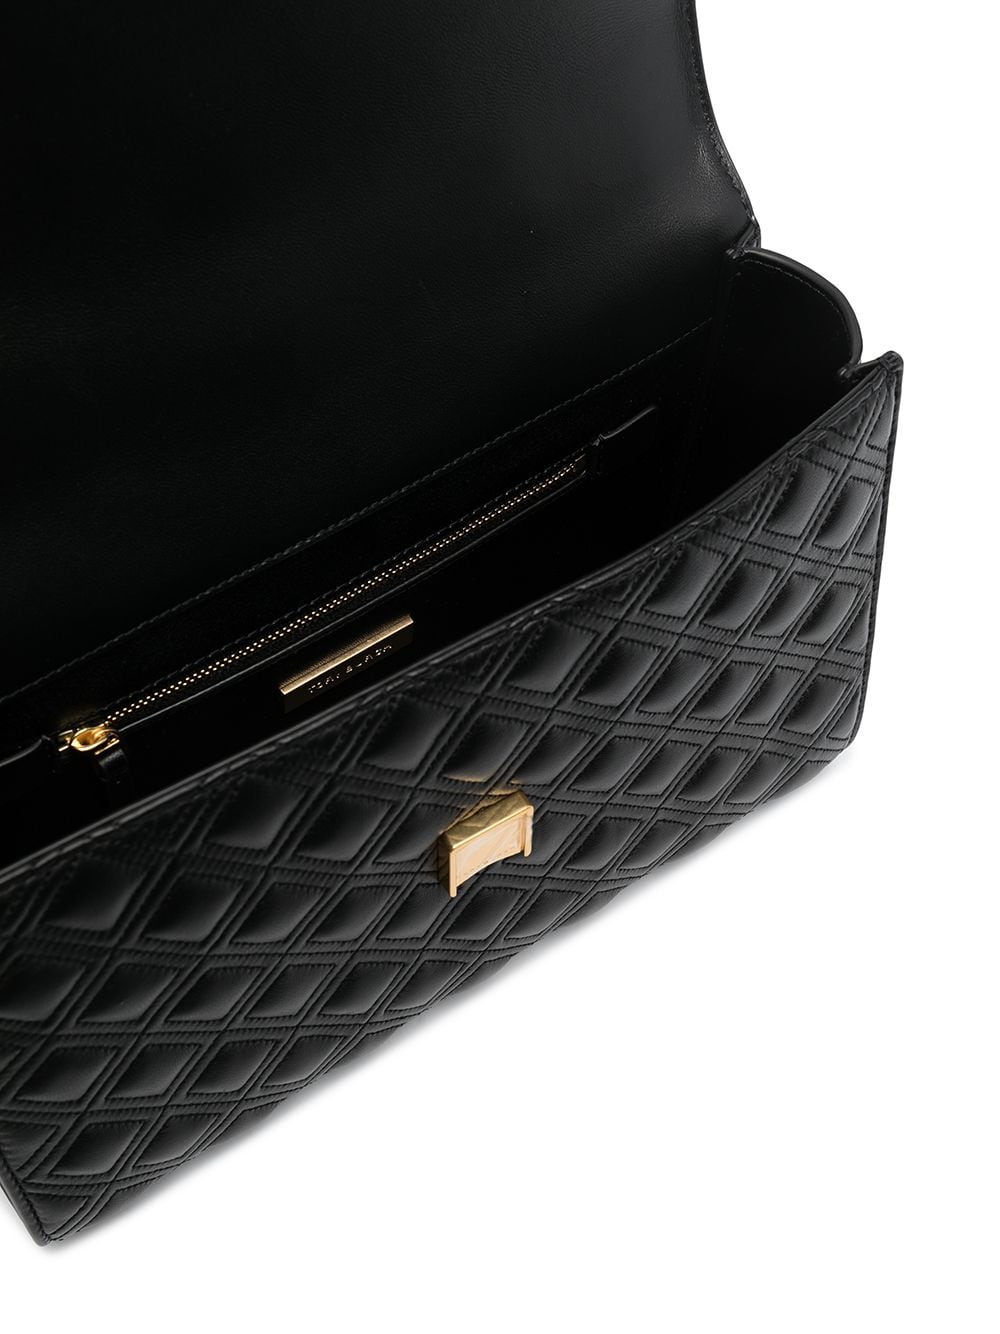 Black leather Fleming convertible leather shoulder bag